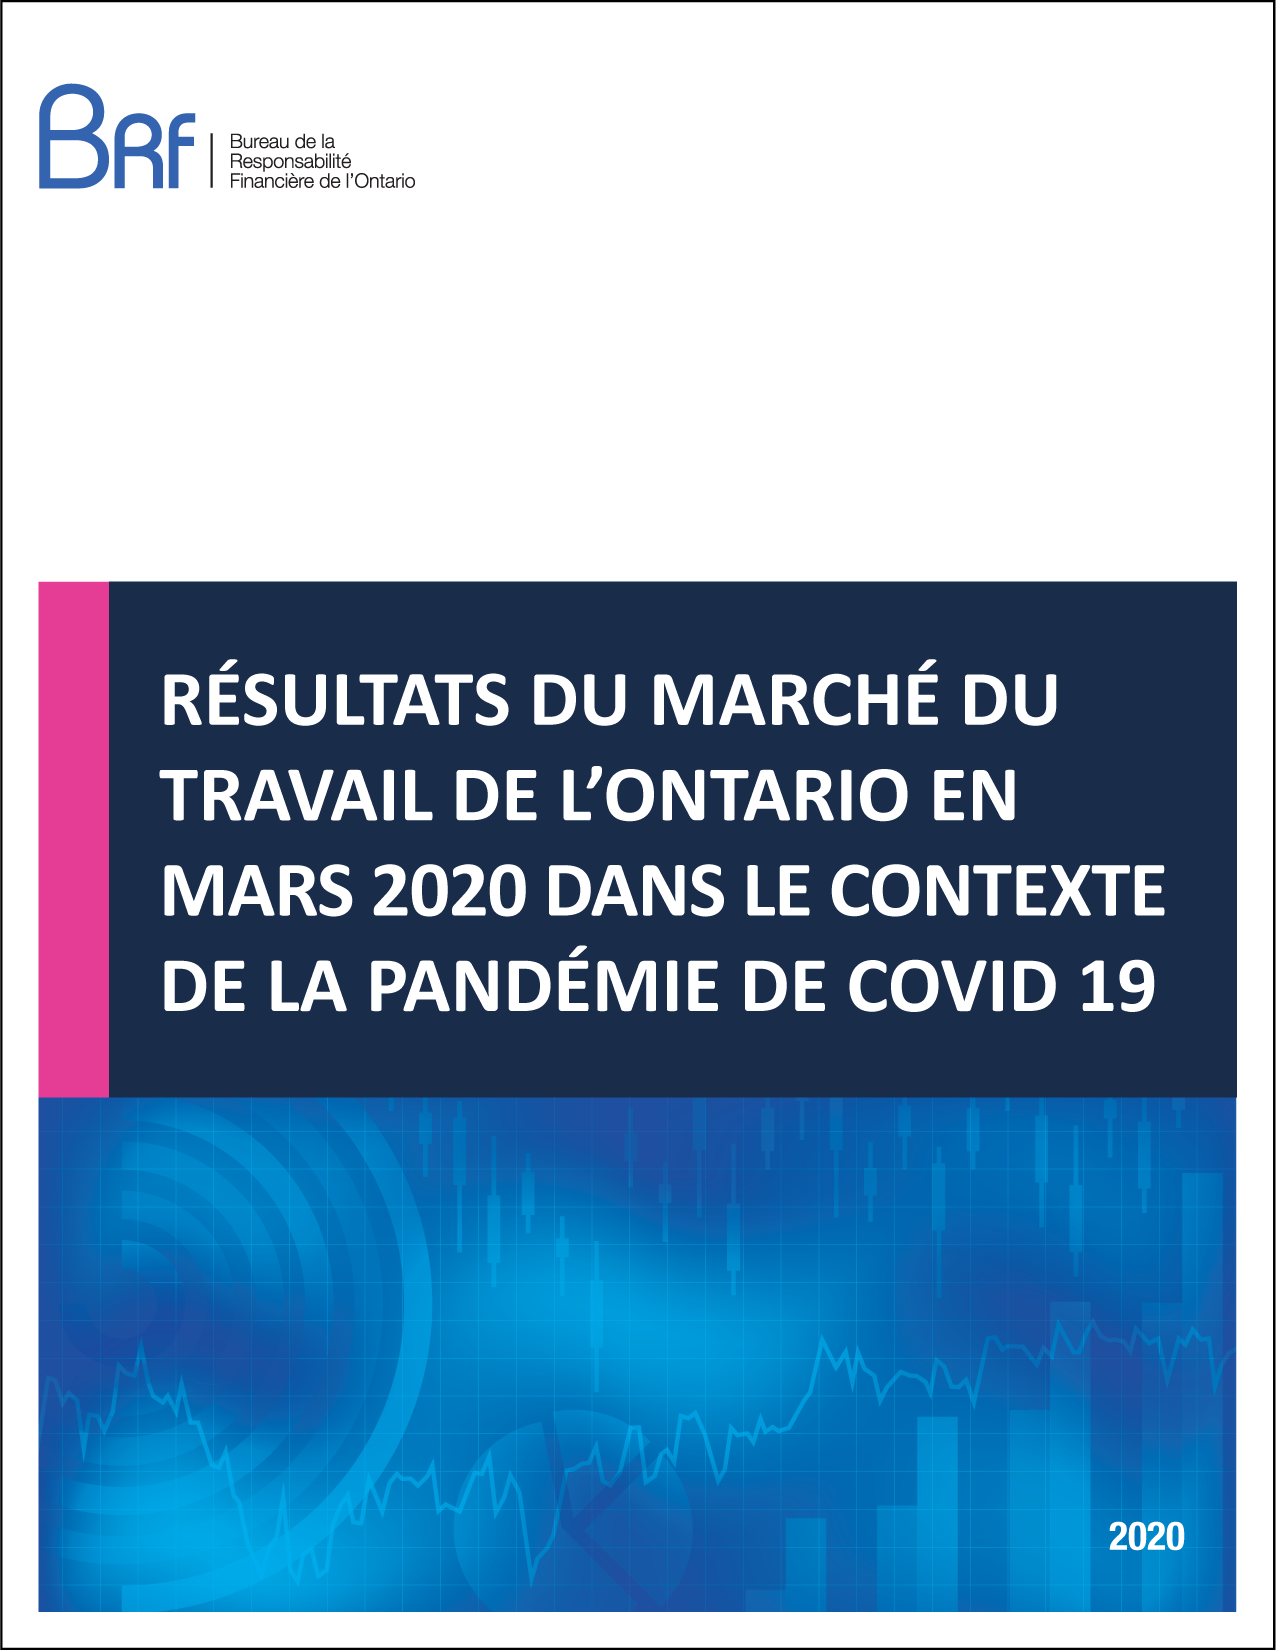 Résultats du marché de travail de l'Ontario en mars 2020 dans le contexte de la pandémie de COVID-19